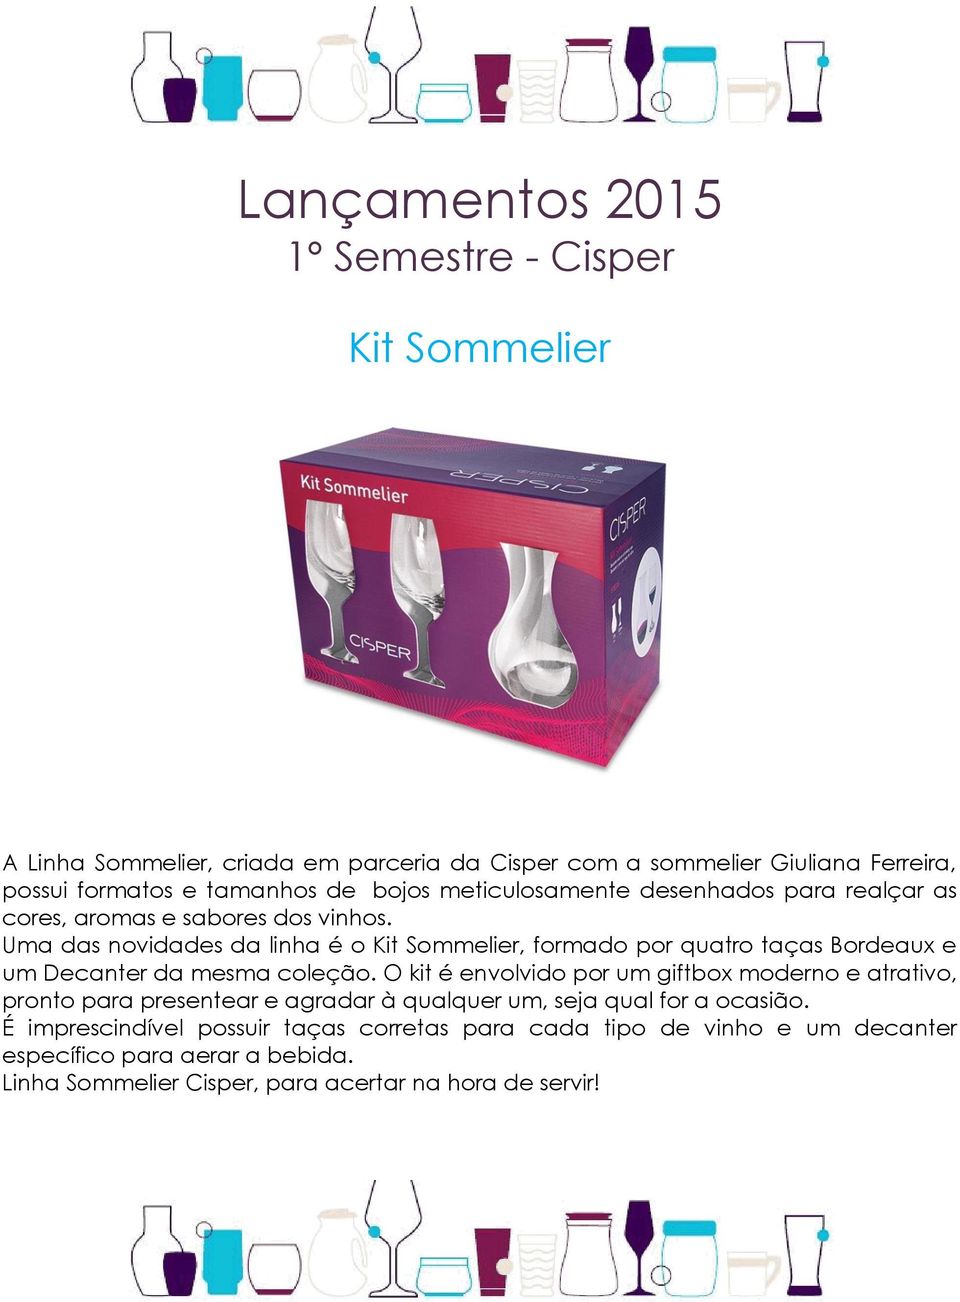 Uma das novidades da linha é o Kit Sommelier, formado por quatro taças Bordeaux e um Decanter da mesma coleção.